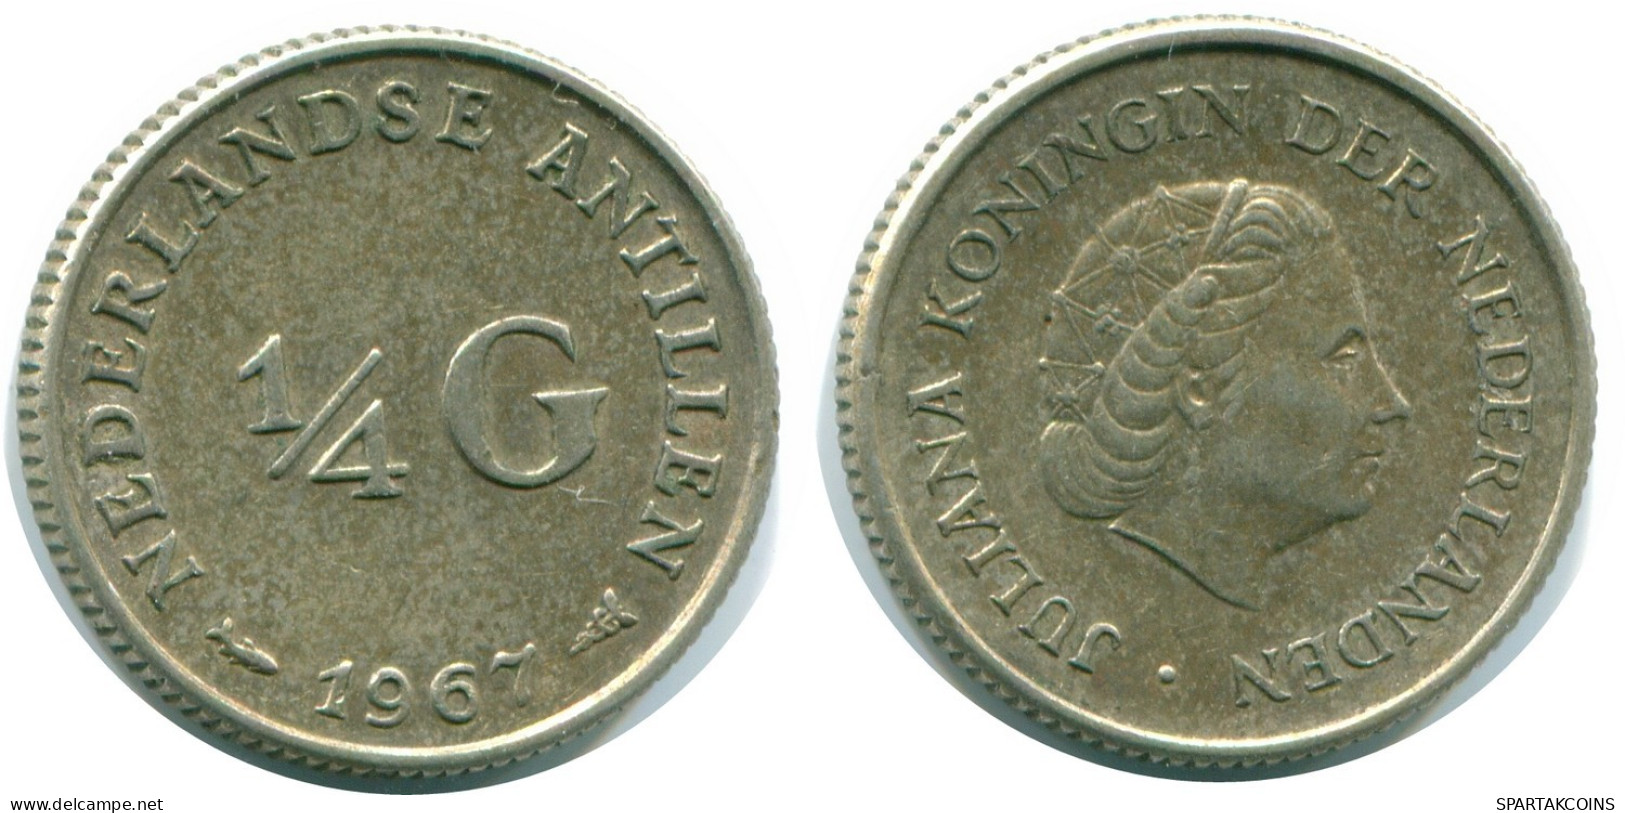 1/4 GULDEN 1967 NIEDERLÄNDISCHE ANTILLEN SILBER Koloniale Münze #NL11529.4.D.A - Antille Olandesi